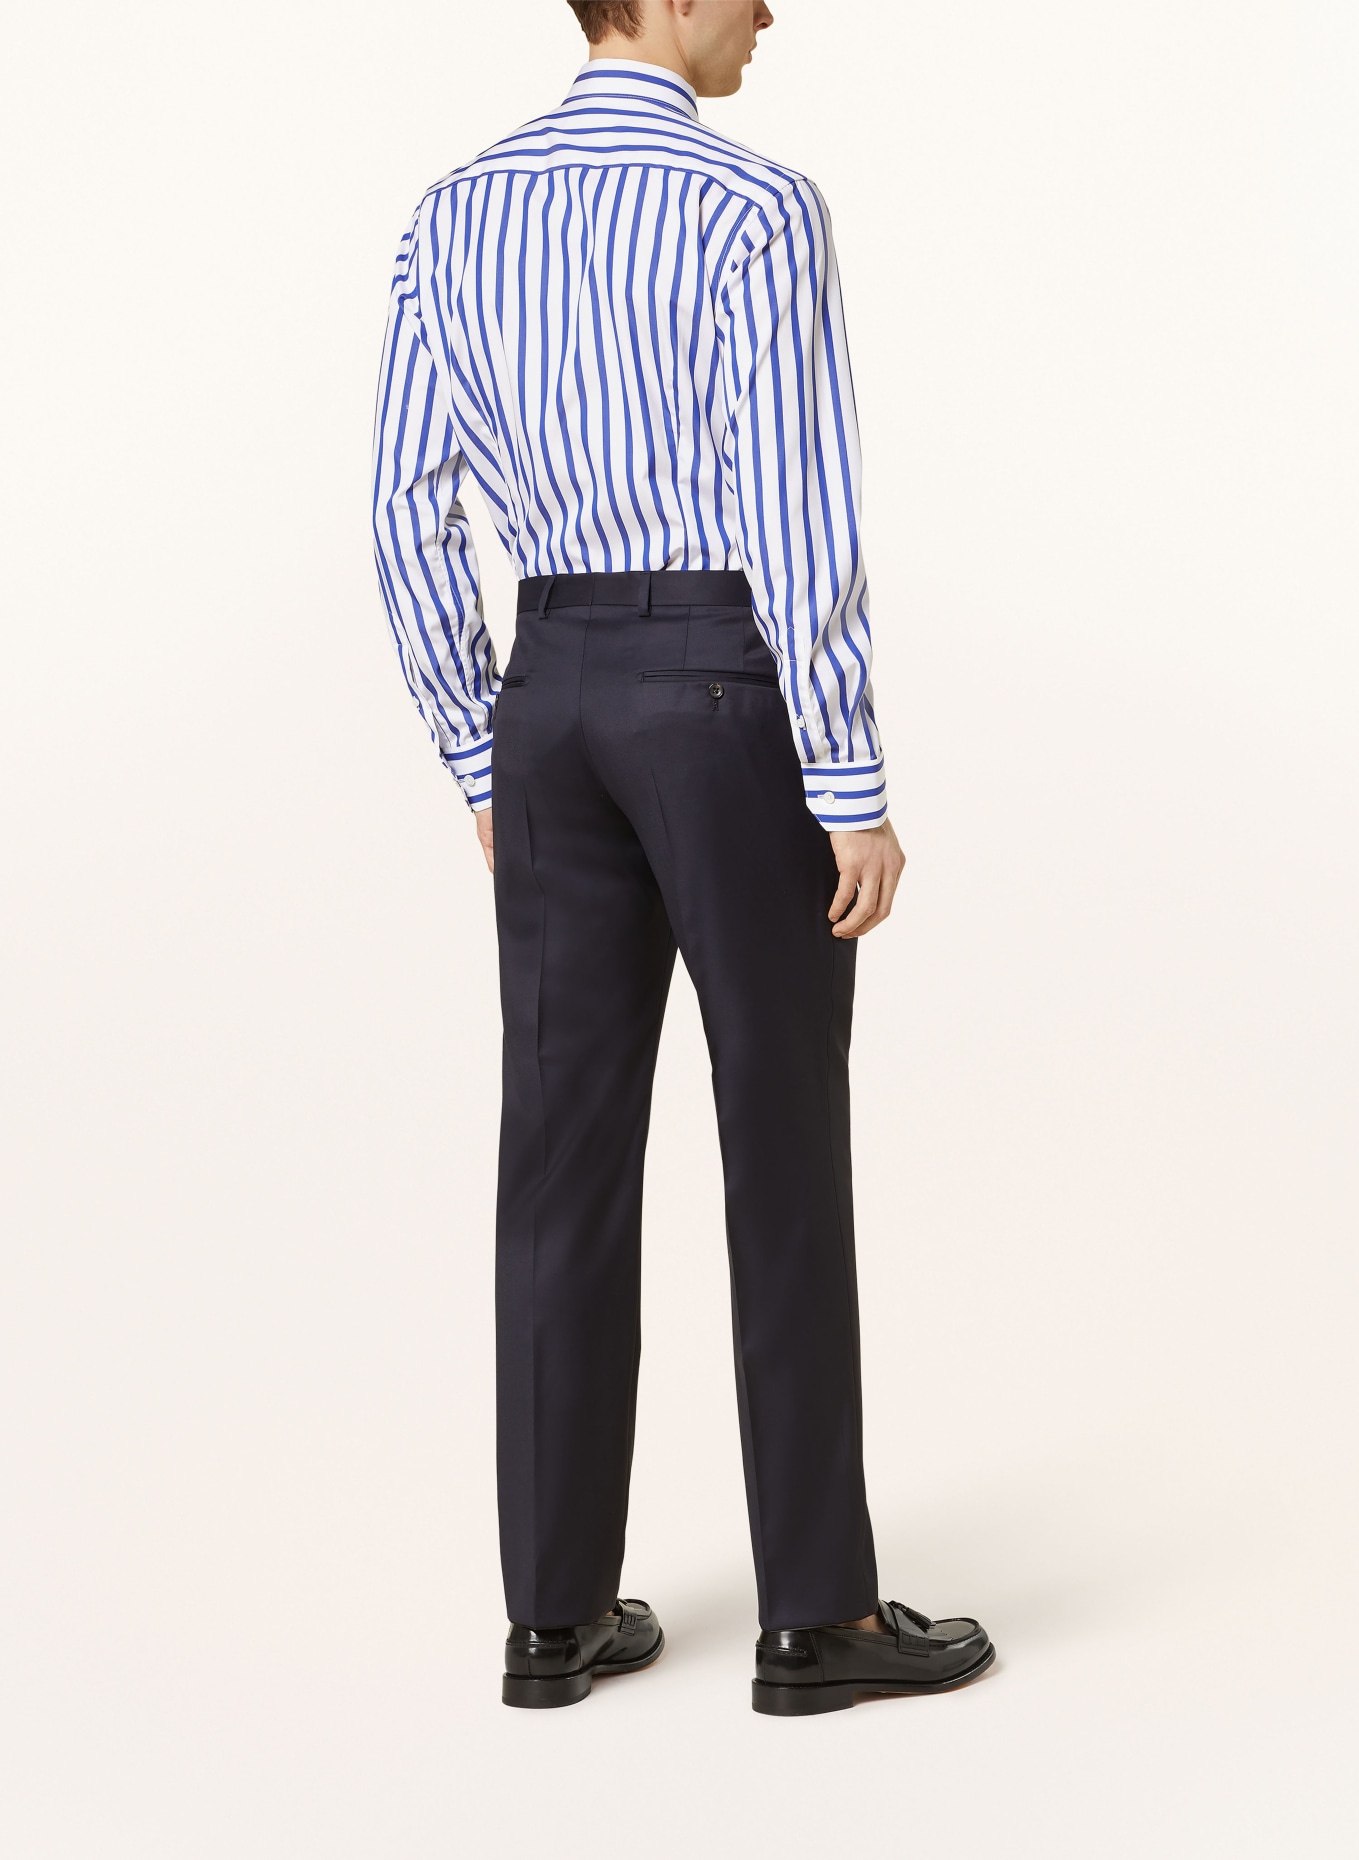 ETON Hemd Slim Fit, Farbe: BLAU/ WEISS (Bild 3)